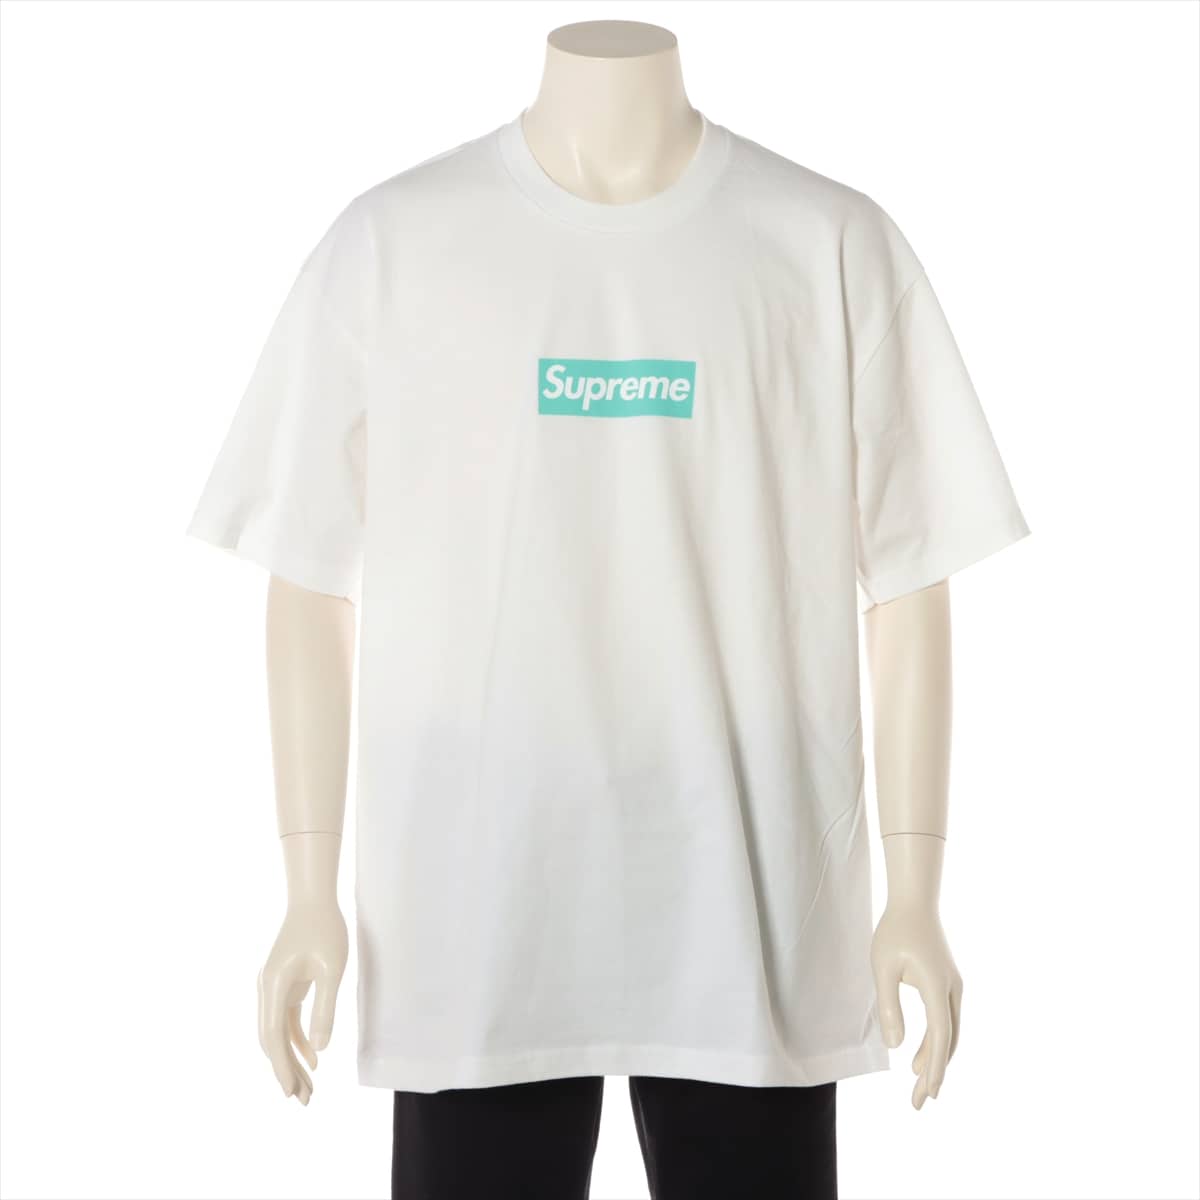 Supreme x Tiffany 21AW Cotton T-shirt XL Men's White  Box Logo Tee